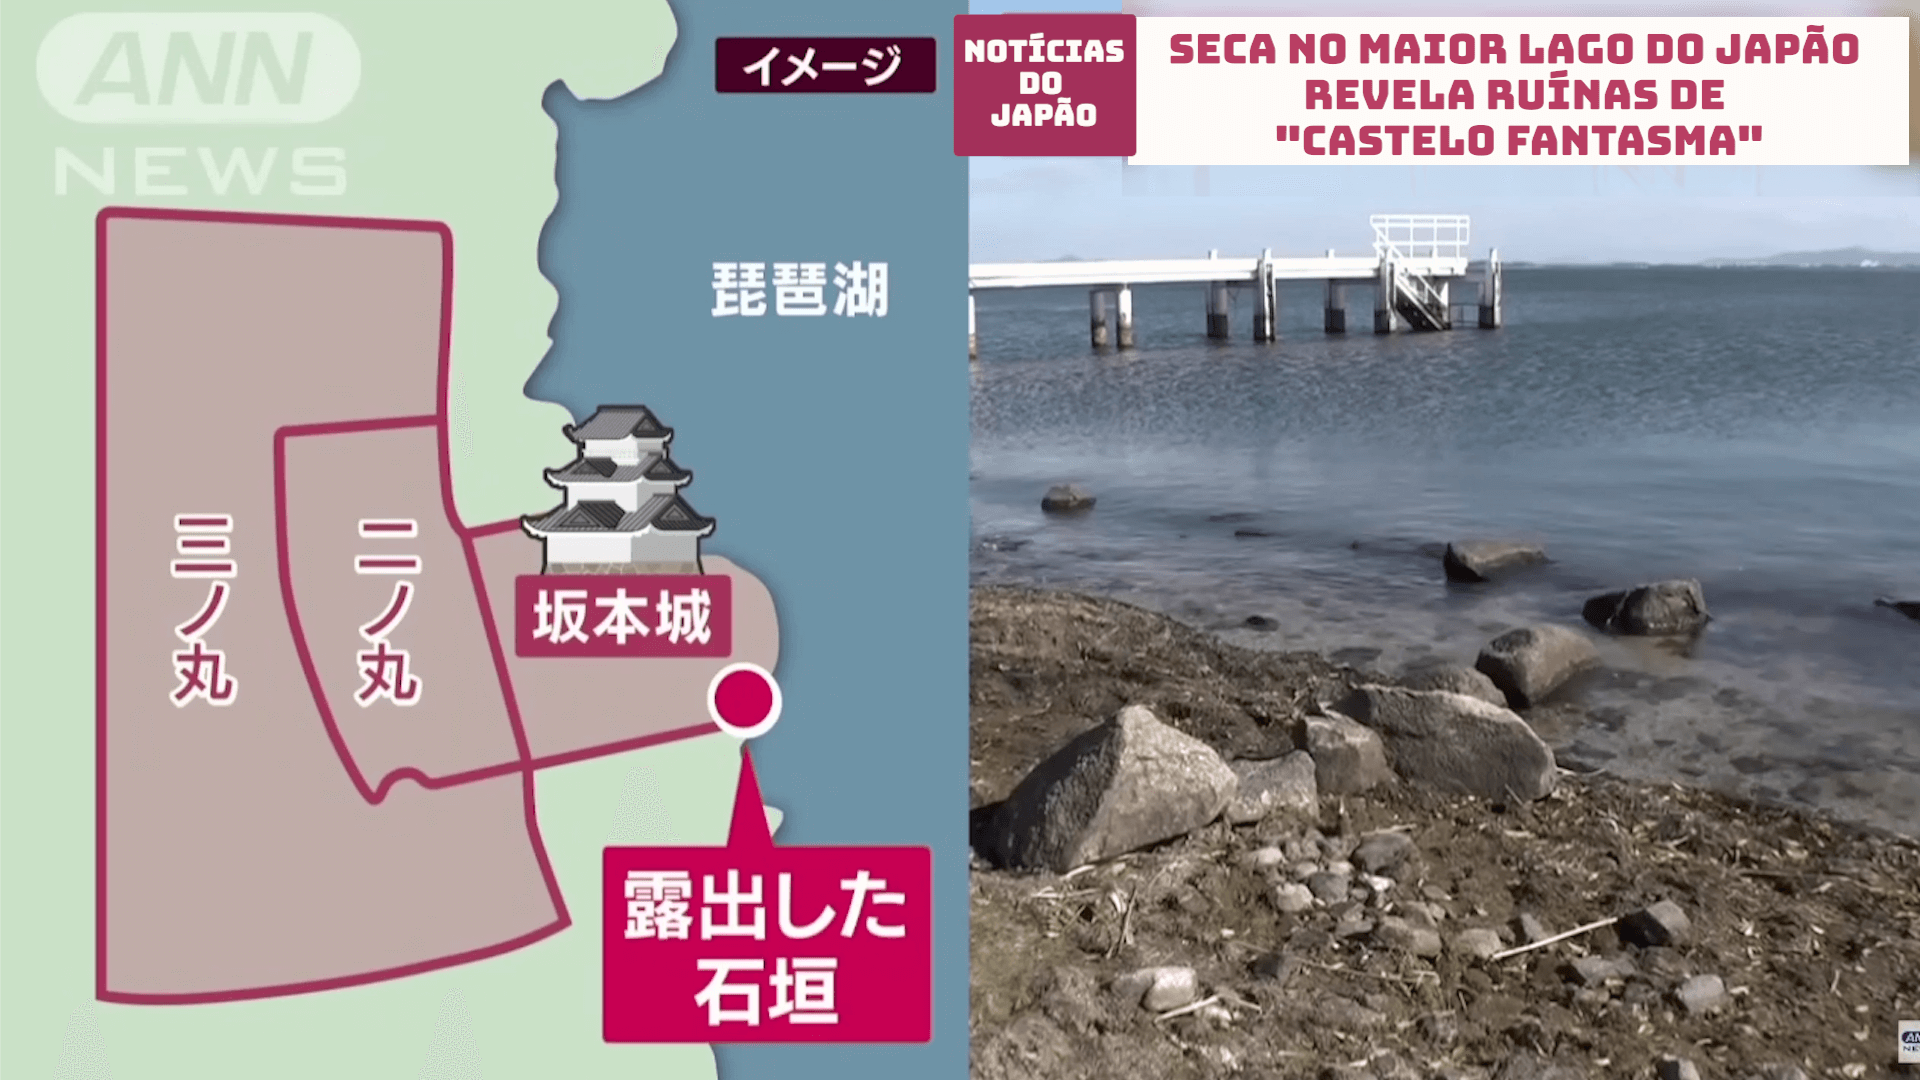 Seca no maior lago do Japão revela ruínas de “Castelo Fantasma”